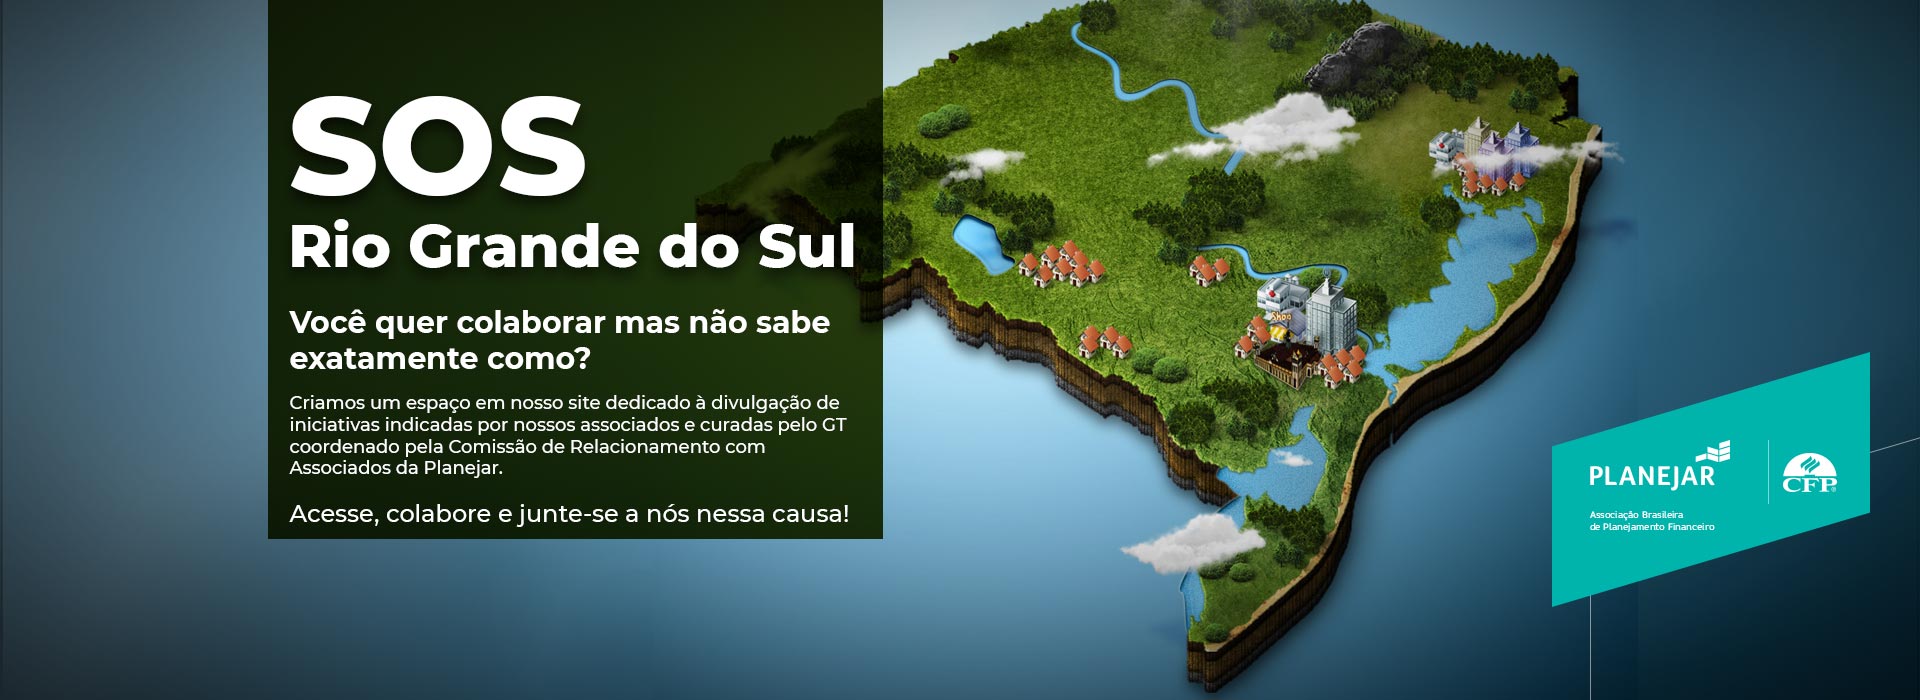 Banner SOS Rio Grande do Sul